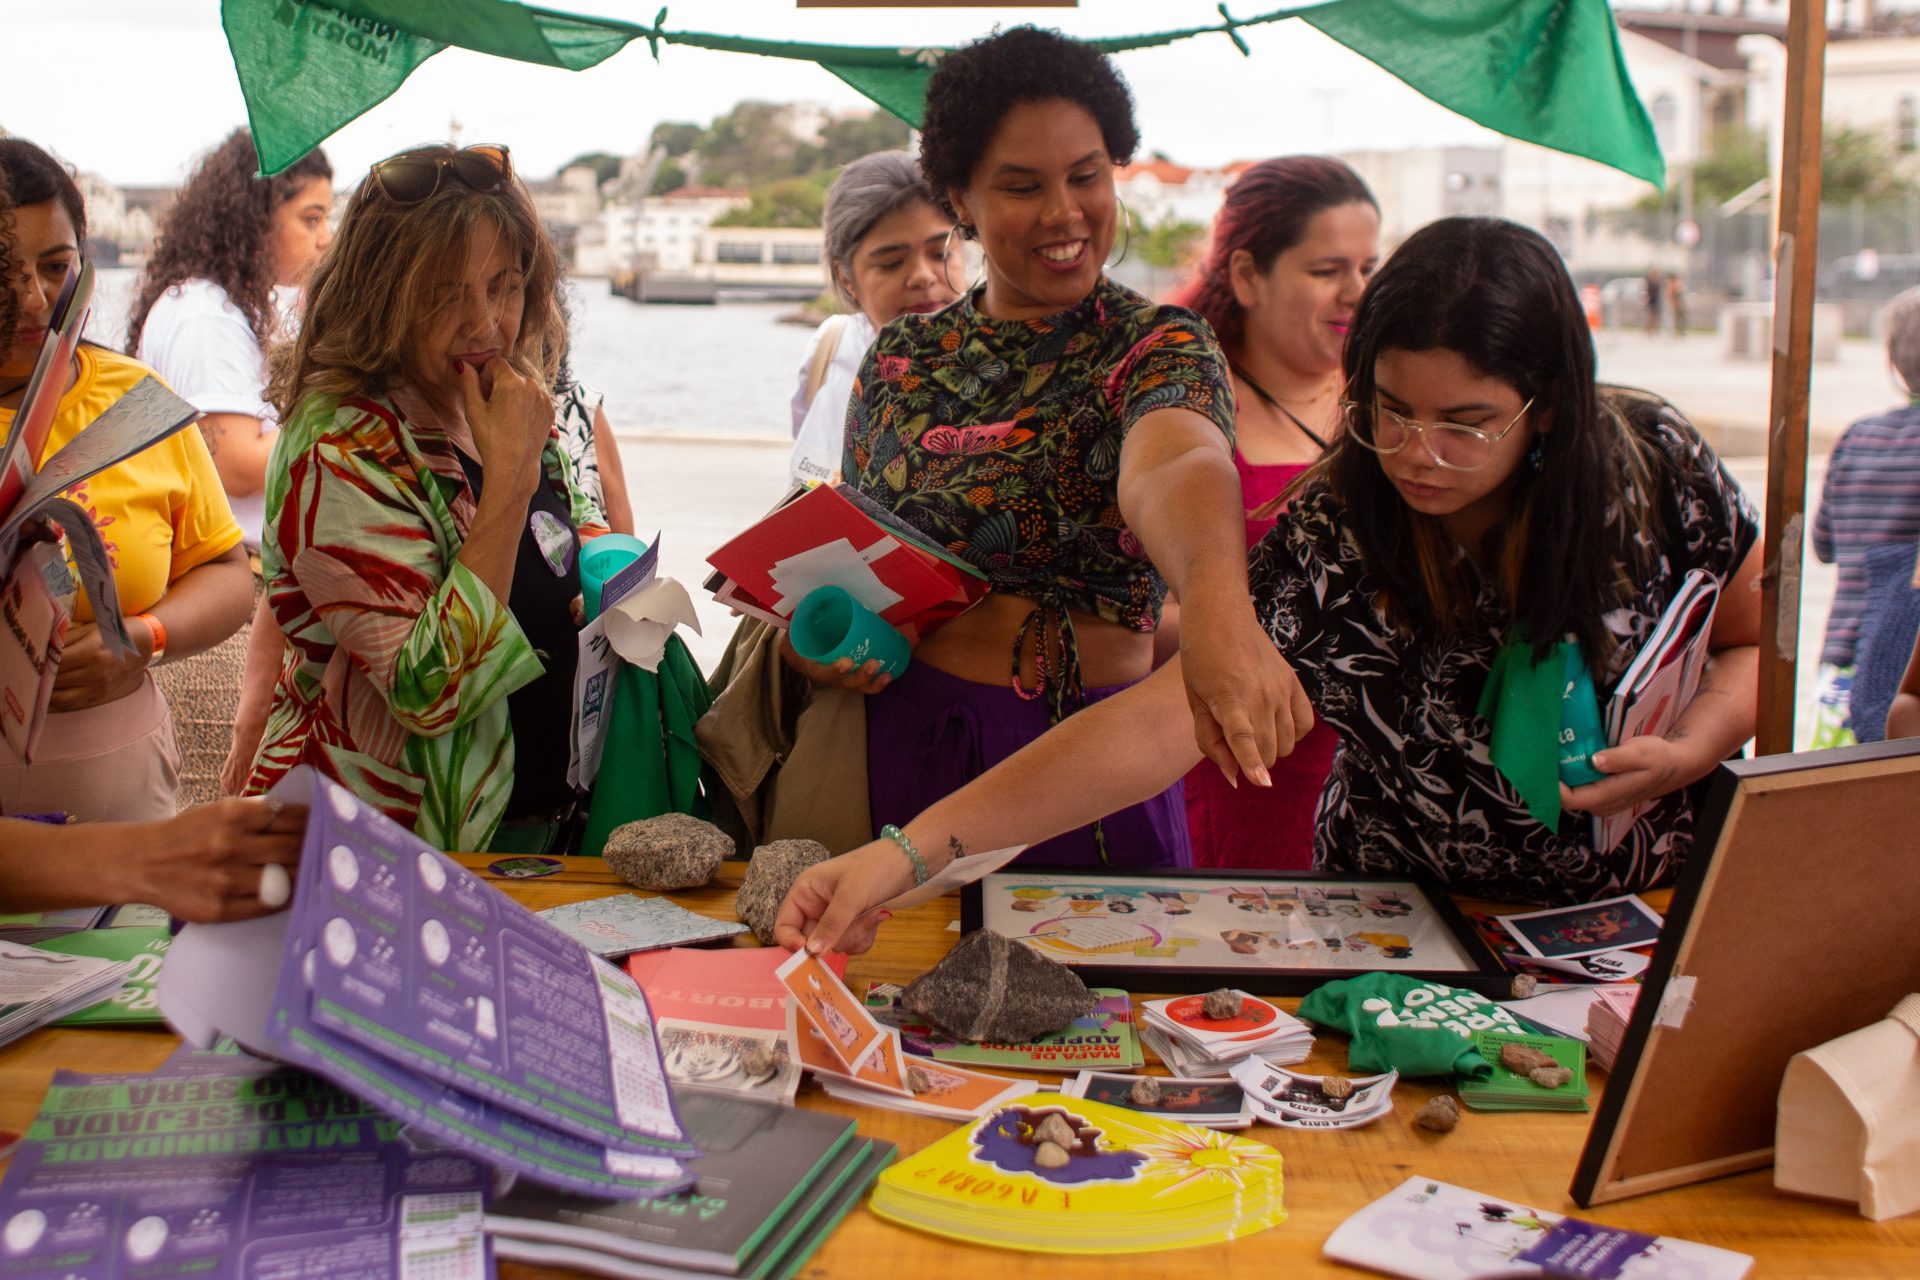 Foto de uma mesa, que fazia parte da barraca de Justiça Reprodutiva, onde á materiais diversos dispostos. Algumas mulheres observam e pegam os materiais que estão sobre a mesa.